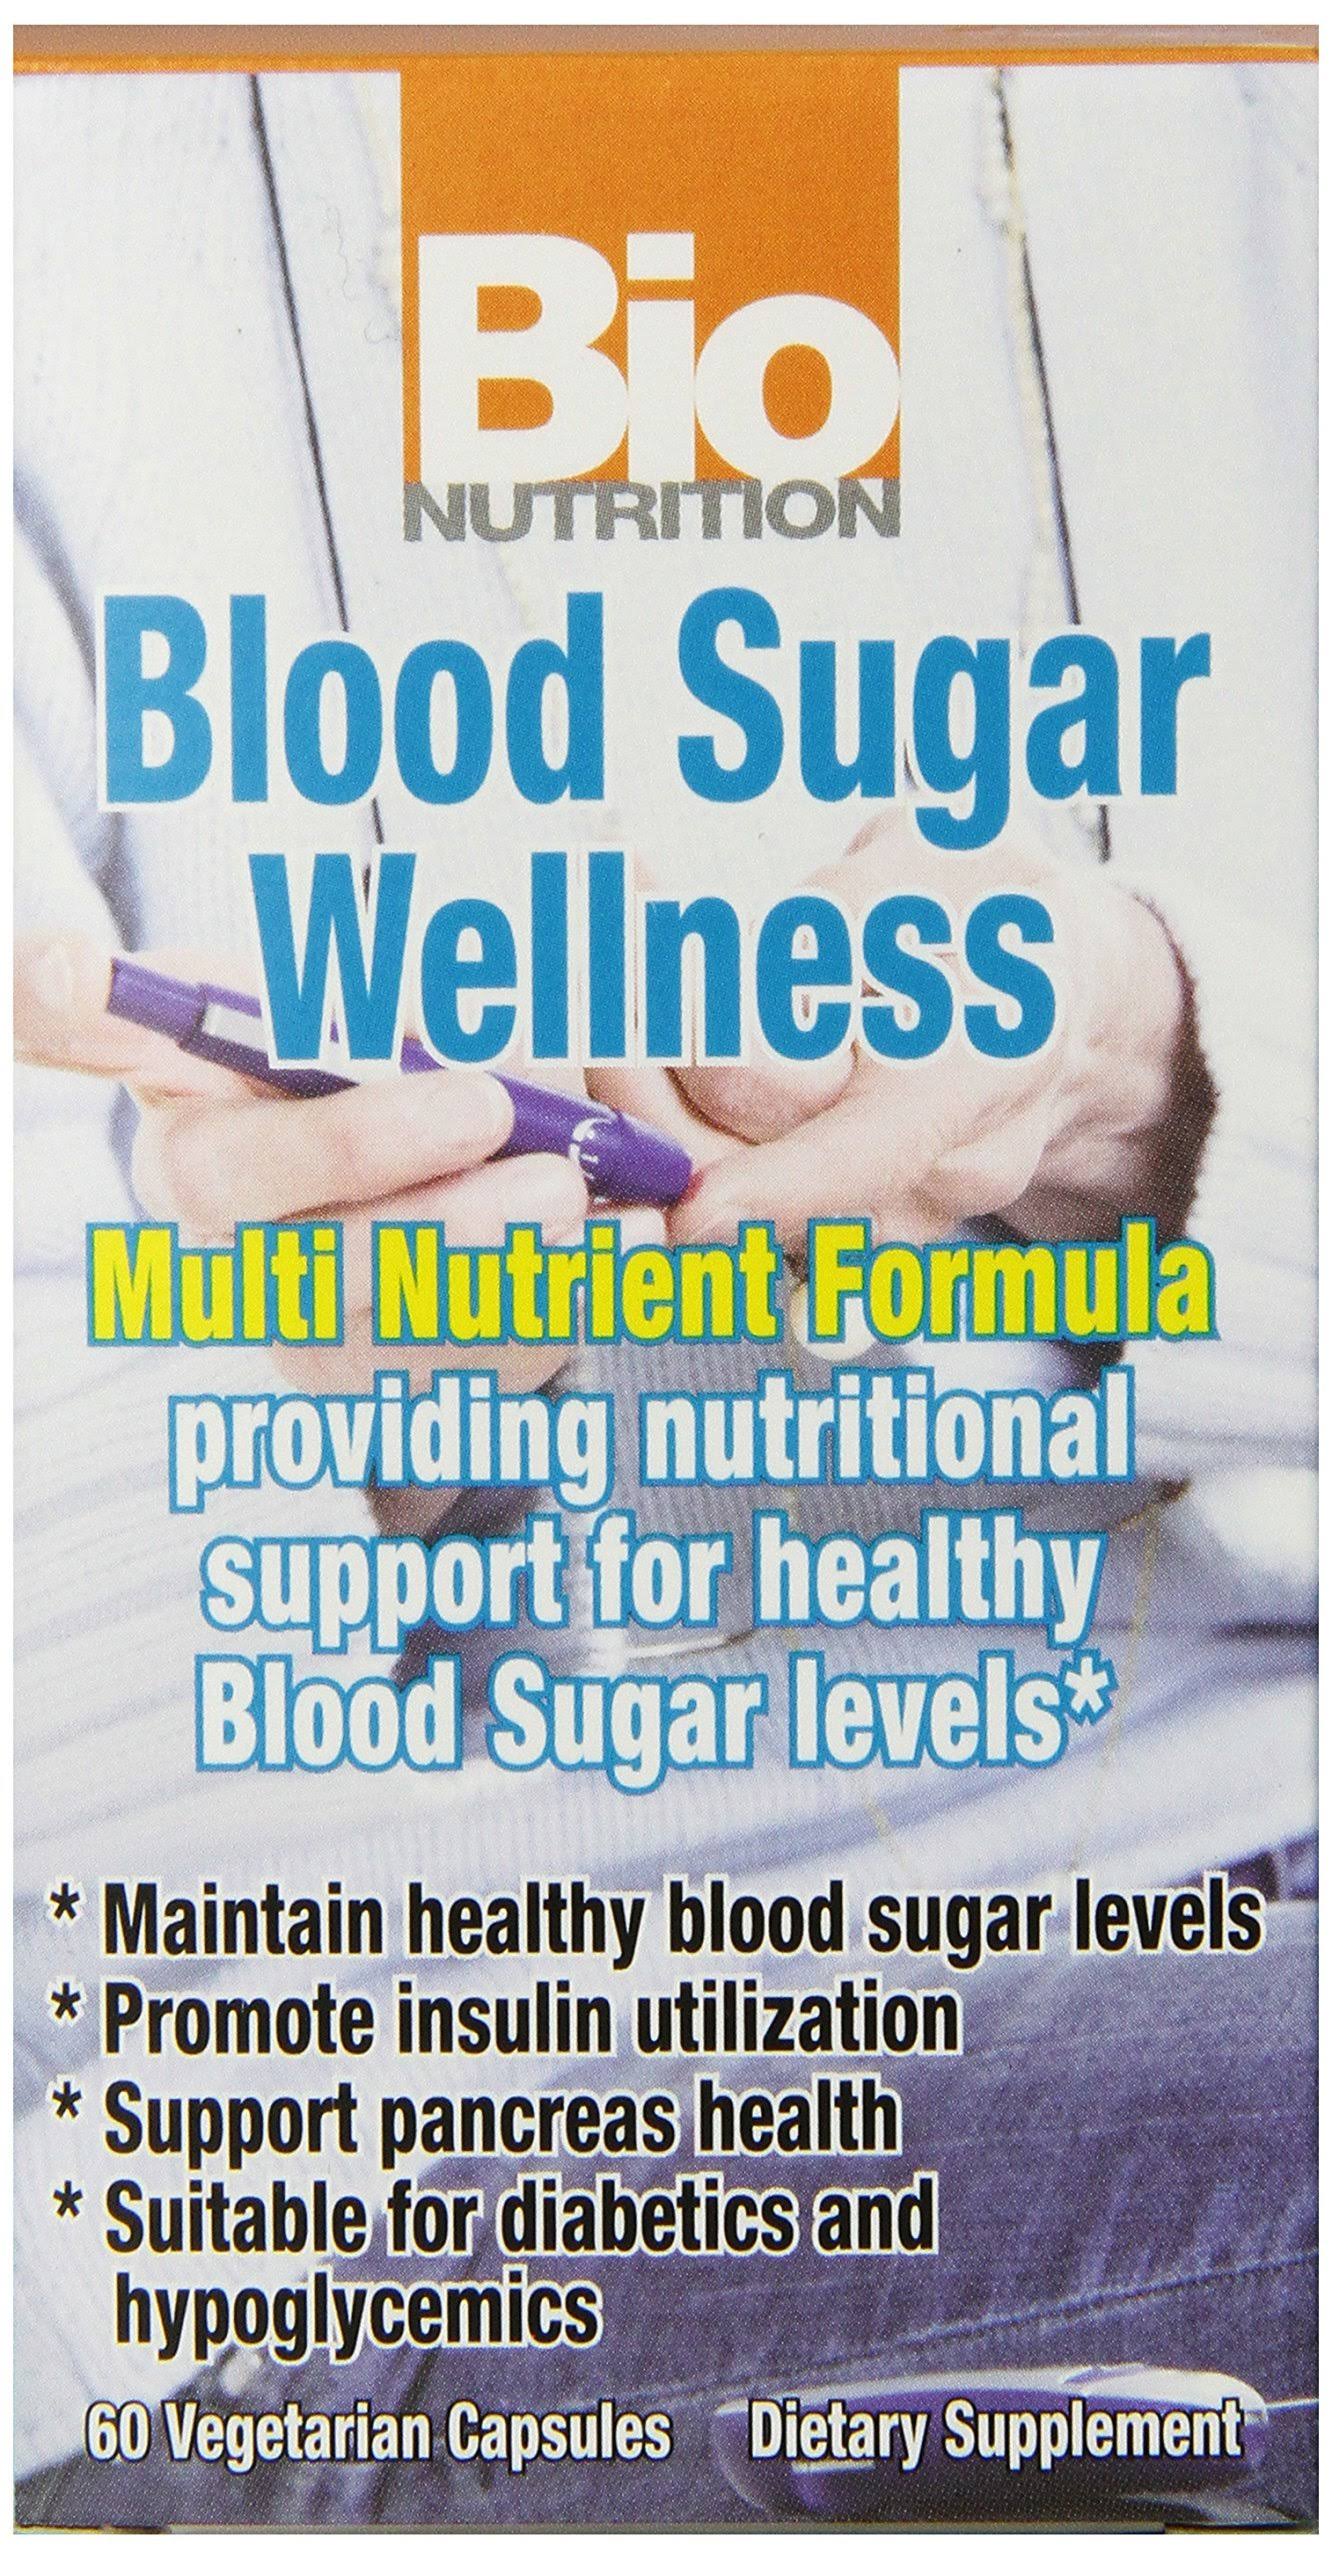 Bio Nutrition Blood Sugar Wellness Supplement - 60ct